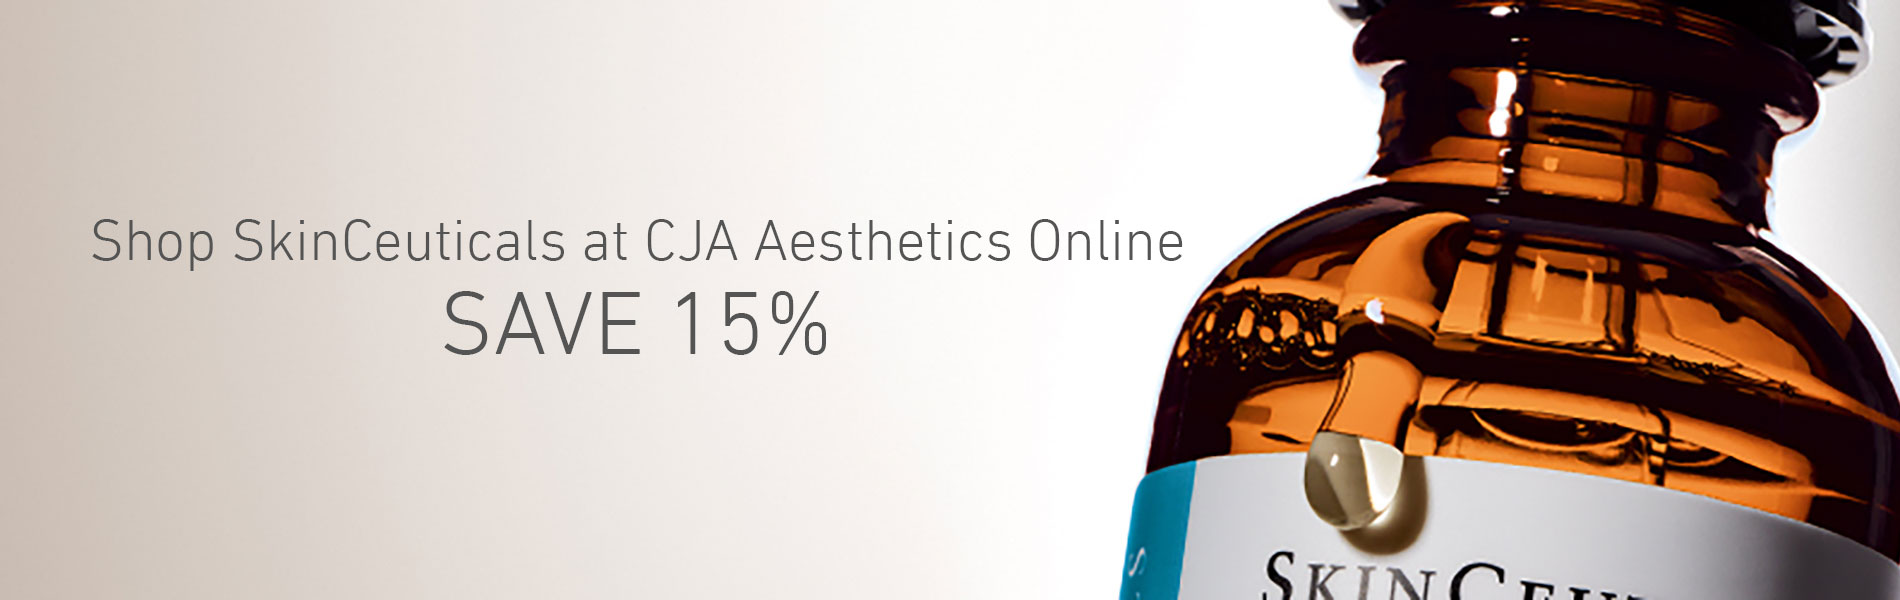 SkinCeuticals Discount CJA Aesthetics Online